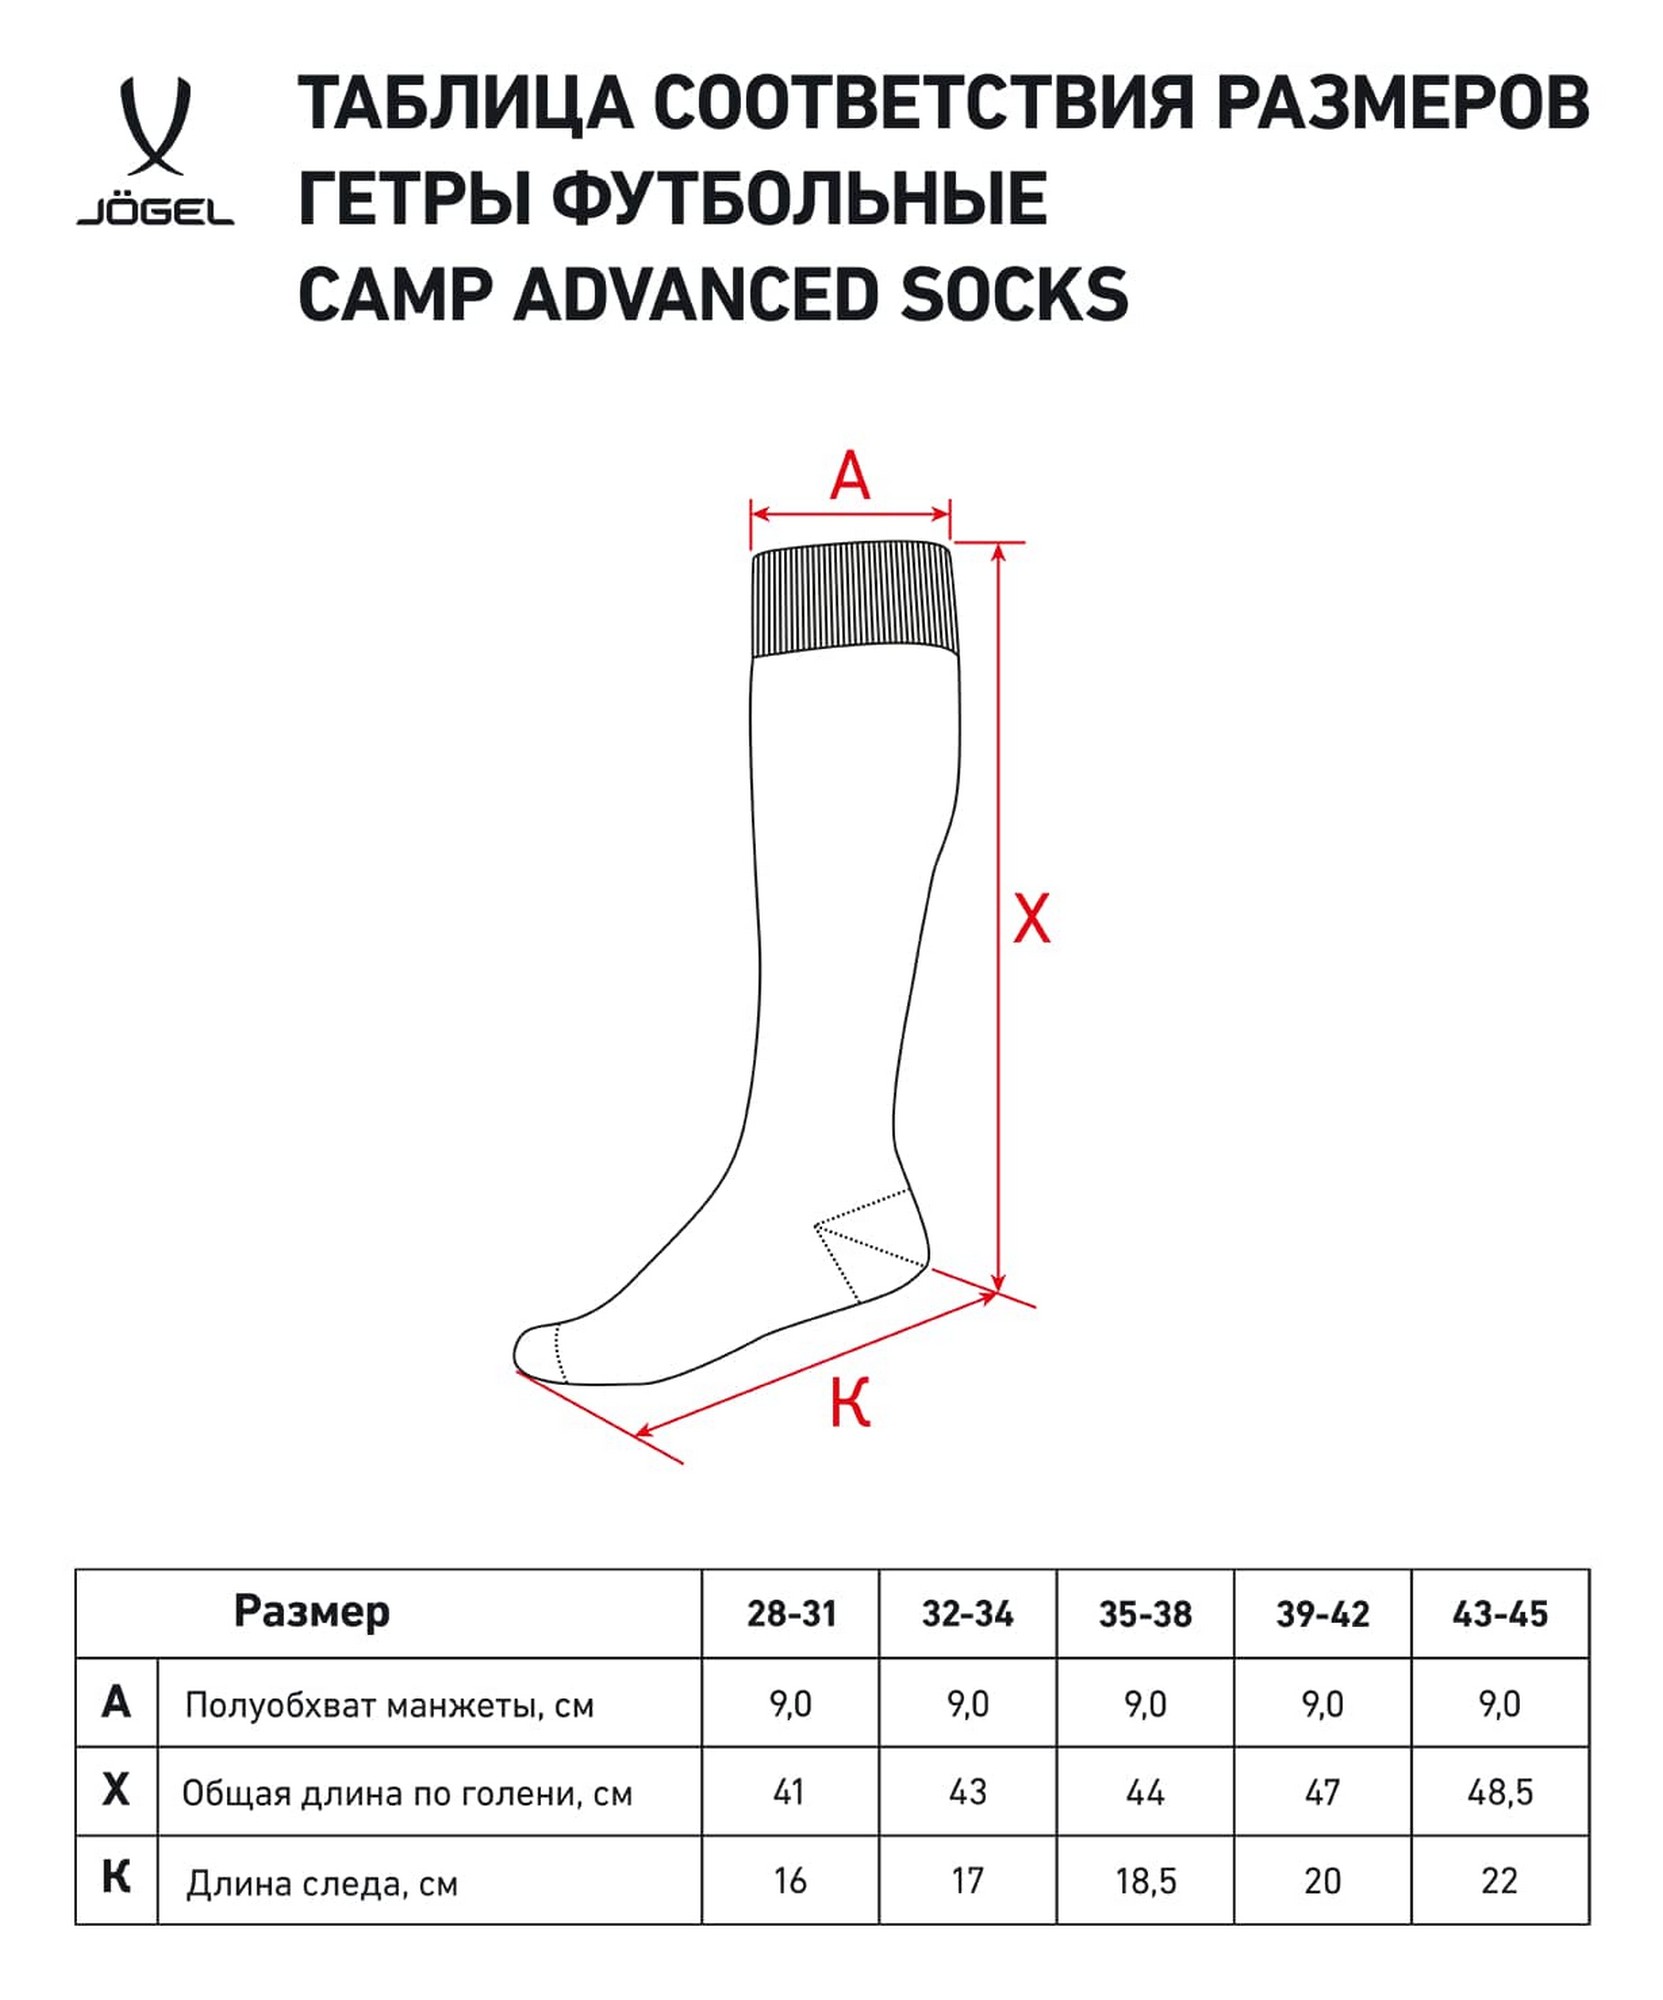 Гетры футбольные Jogel Camp Advanced Socks, гранатовый\белый 1663_2000